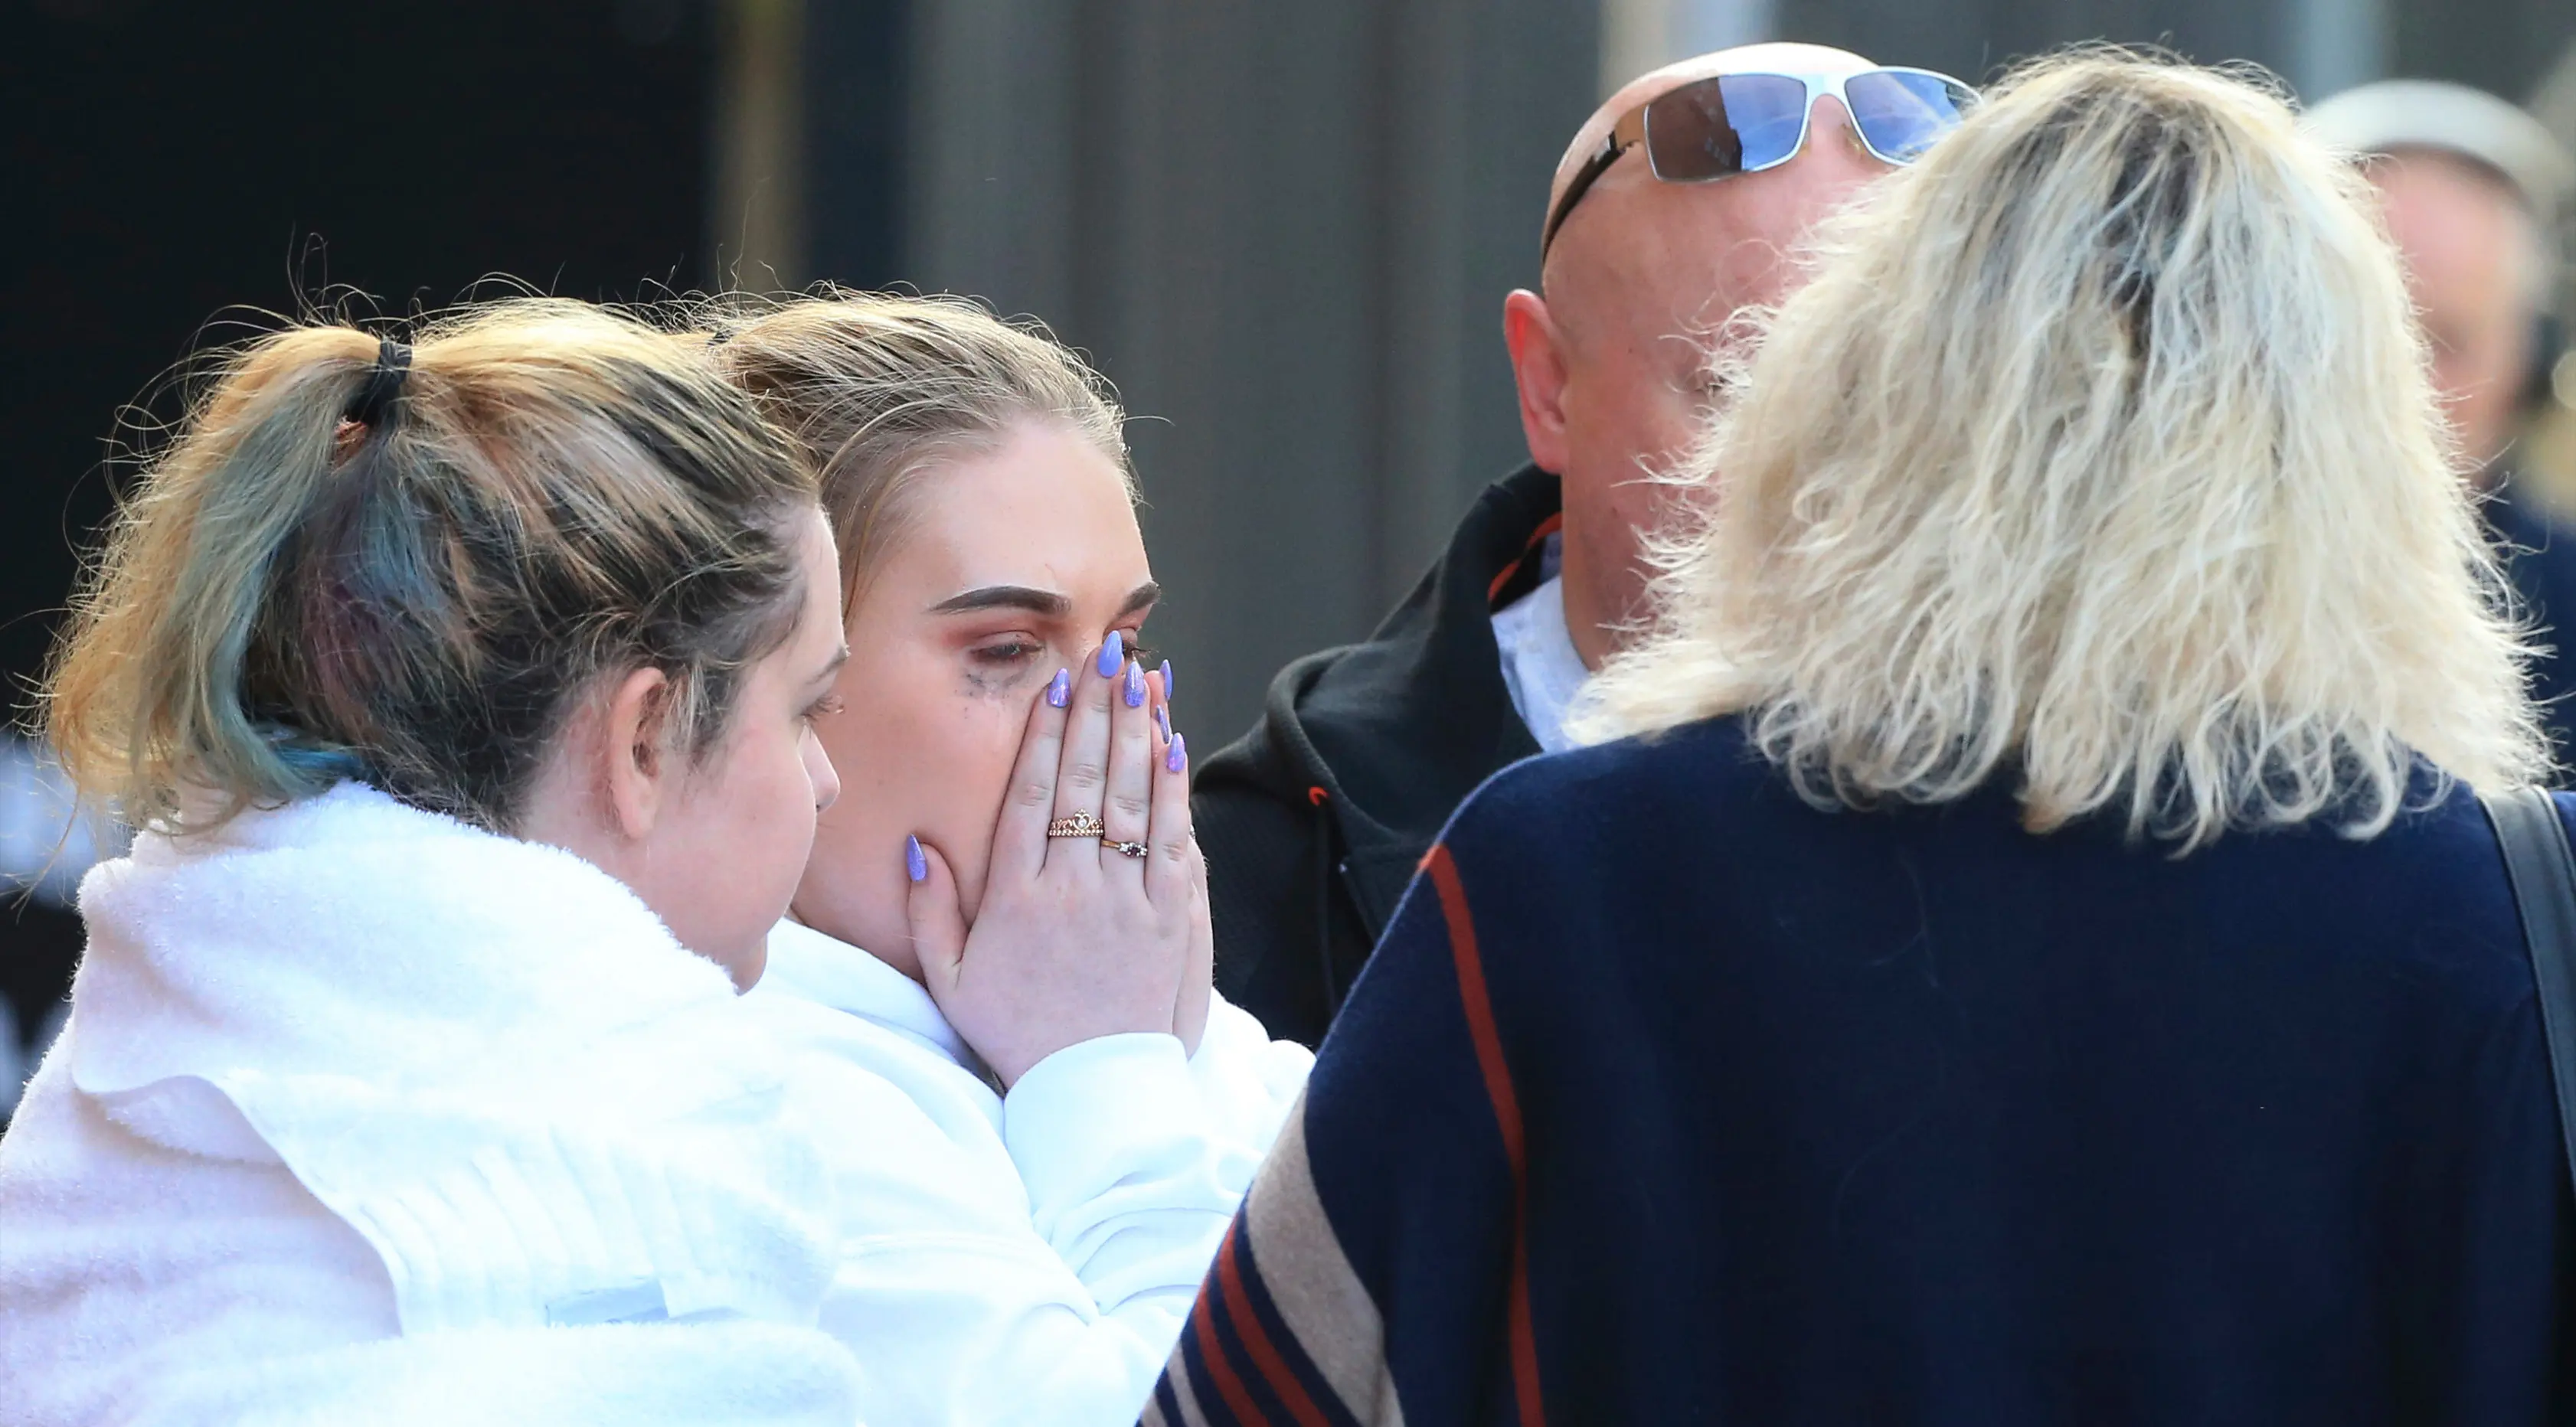 Sejumlah penggemar Ariana Grande bereaksi usai ledakan yang terjadi saat konser Ariana Grande di Manchester, Inggris (23/5). Setidaknya 19 orang tewas dalam ledakan yang terjadi tepat setelah konser Ariana Grande berakhir. (AP Photo/Rui Vieira)